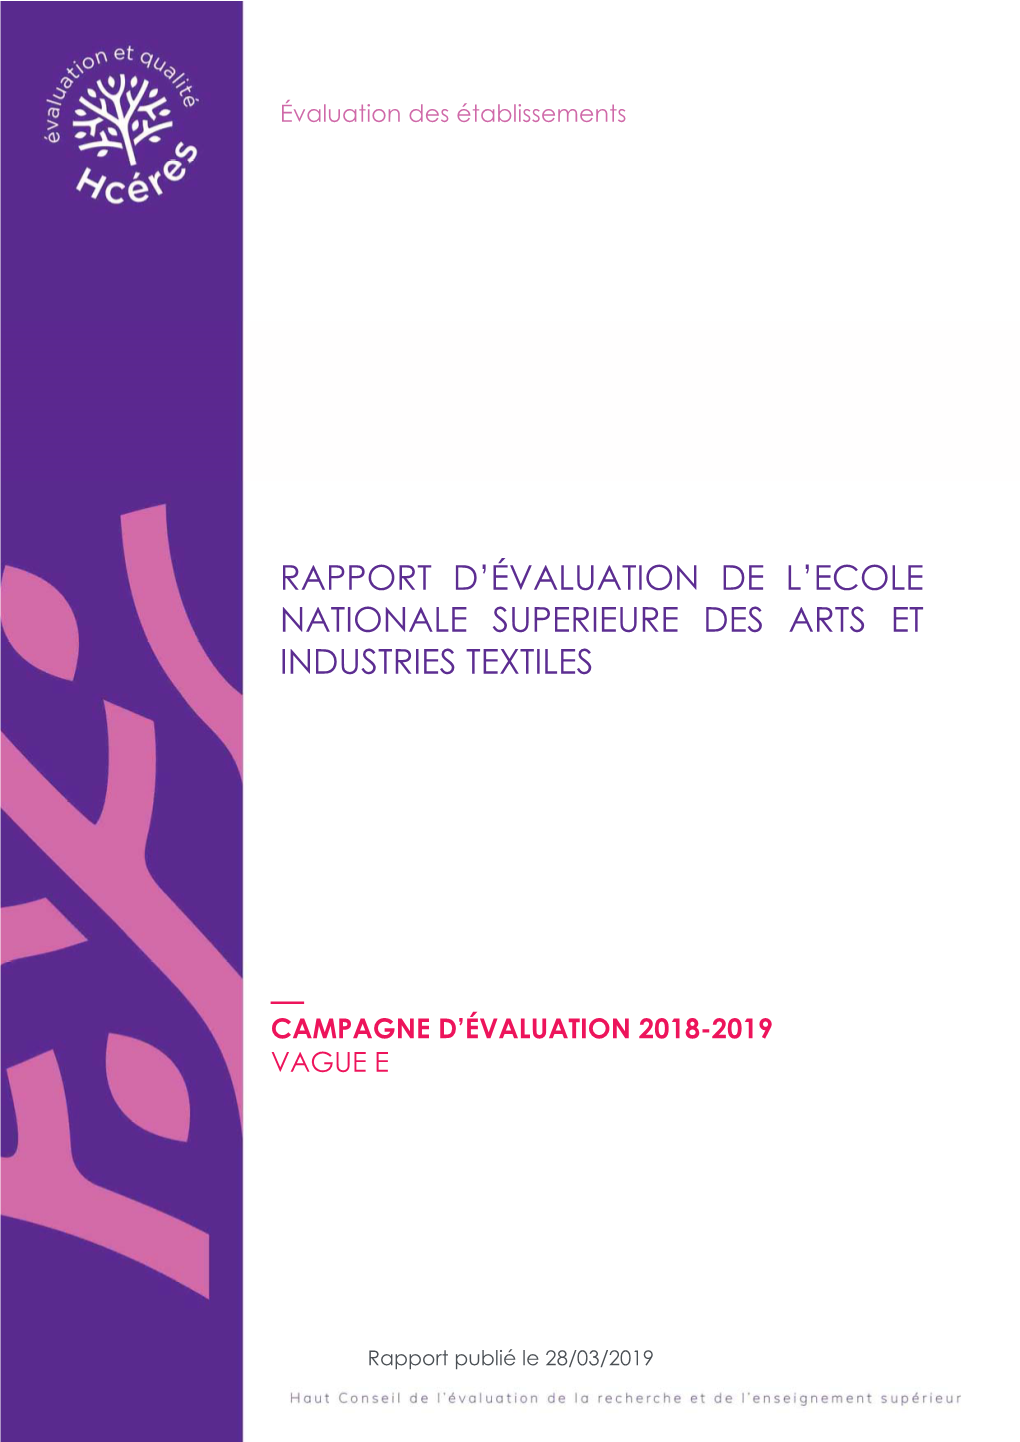 Rapport D'évaluation De L'ecole Nationale